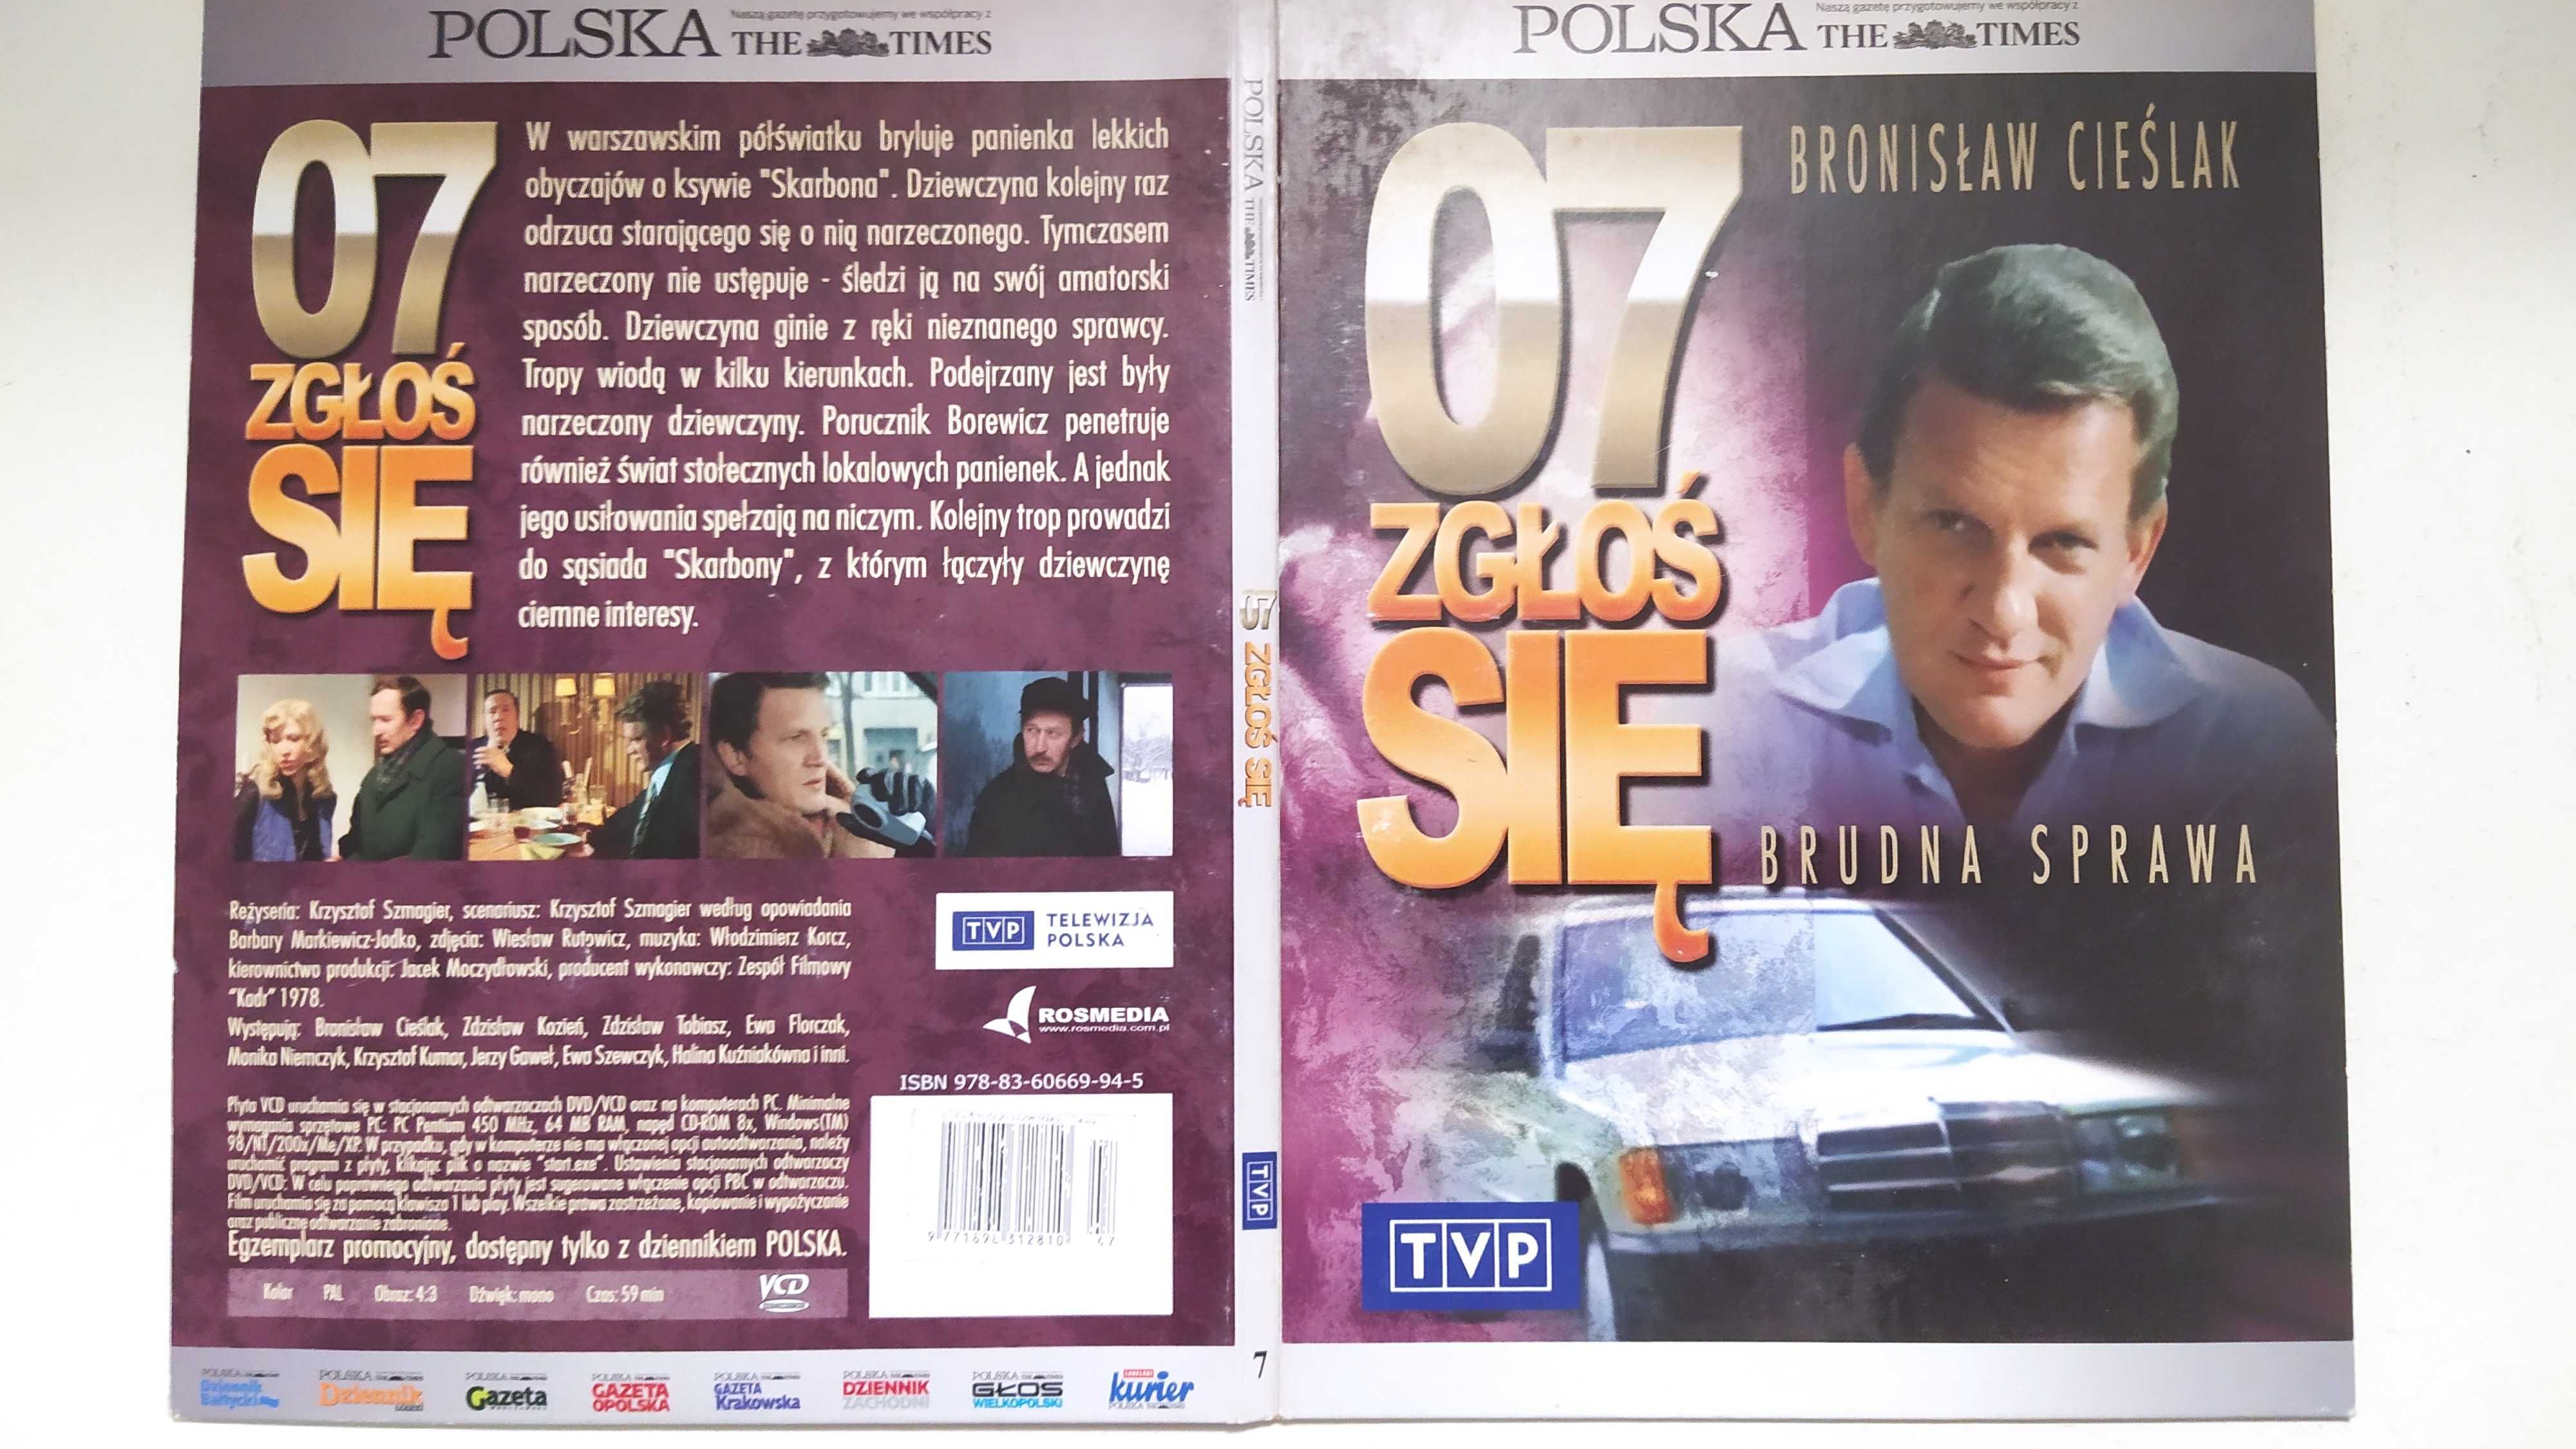 07 Zgłoś się 7 Brudna sprawa Cieślak Polska Times VCD